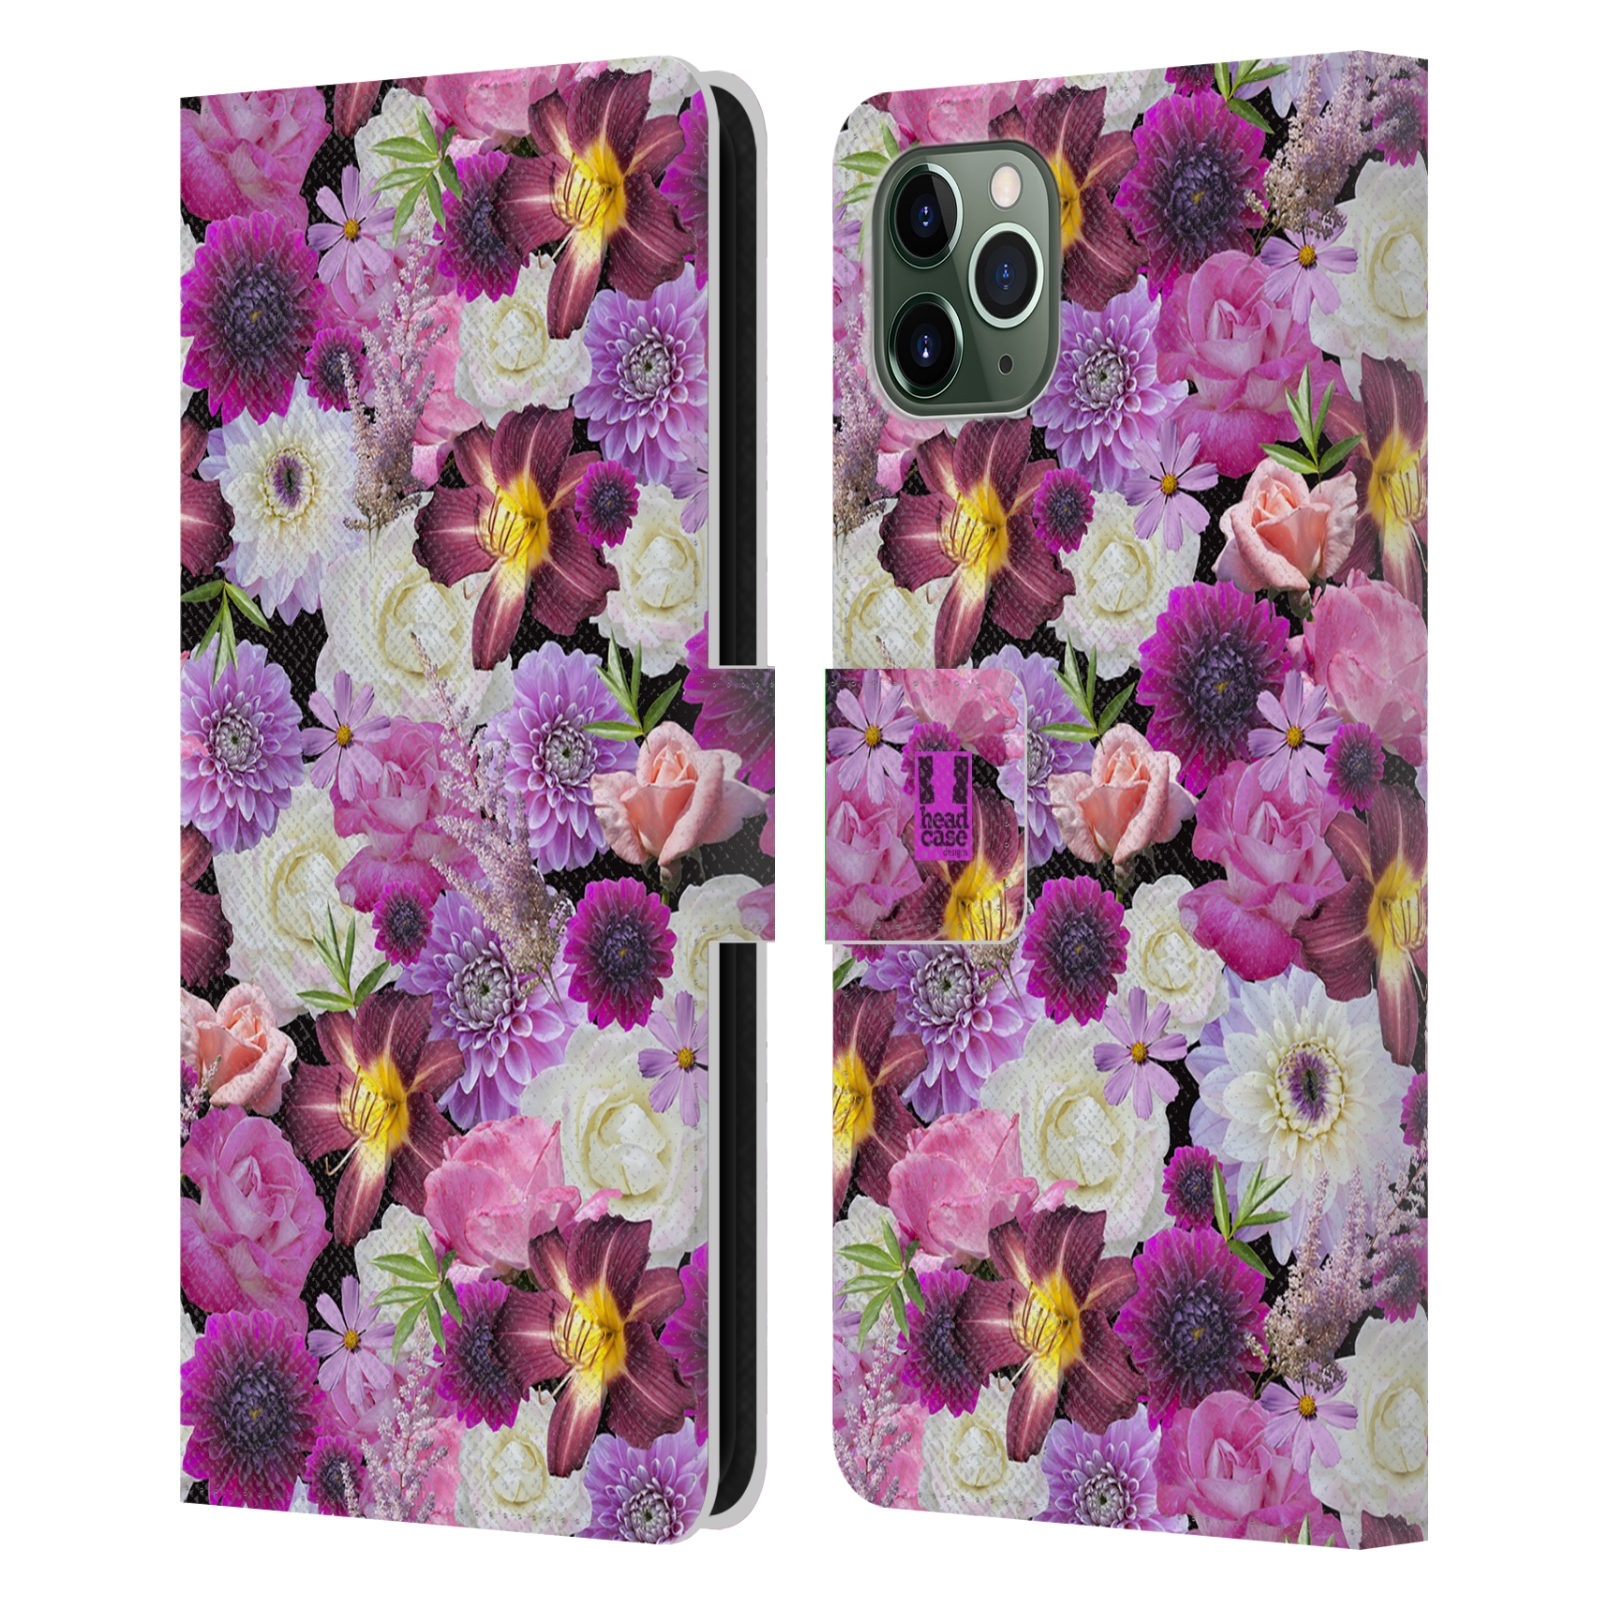 Pouzdro na mobil Apple Iphone 11 PRO MAX květy foto fialová a bílá